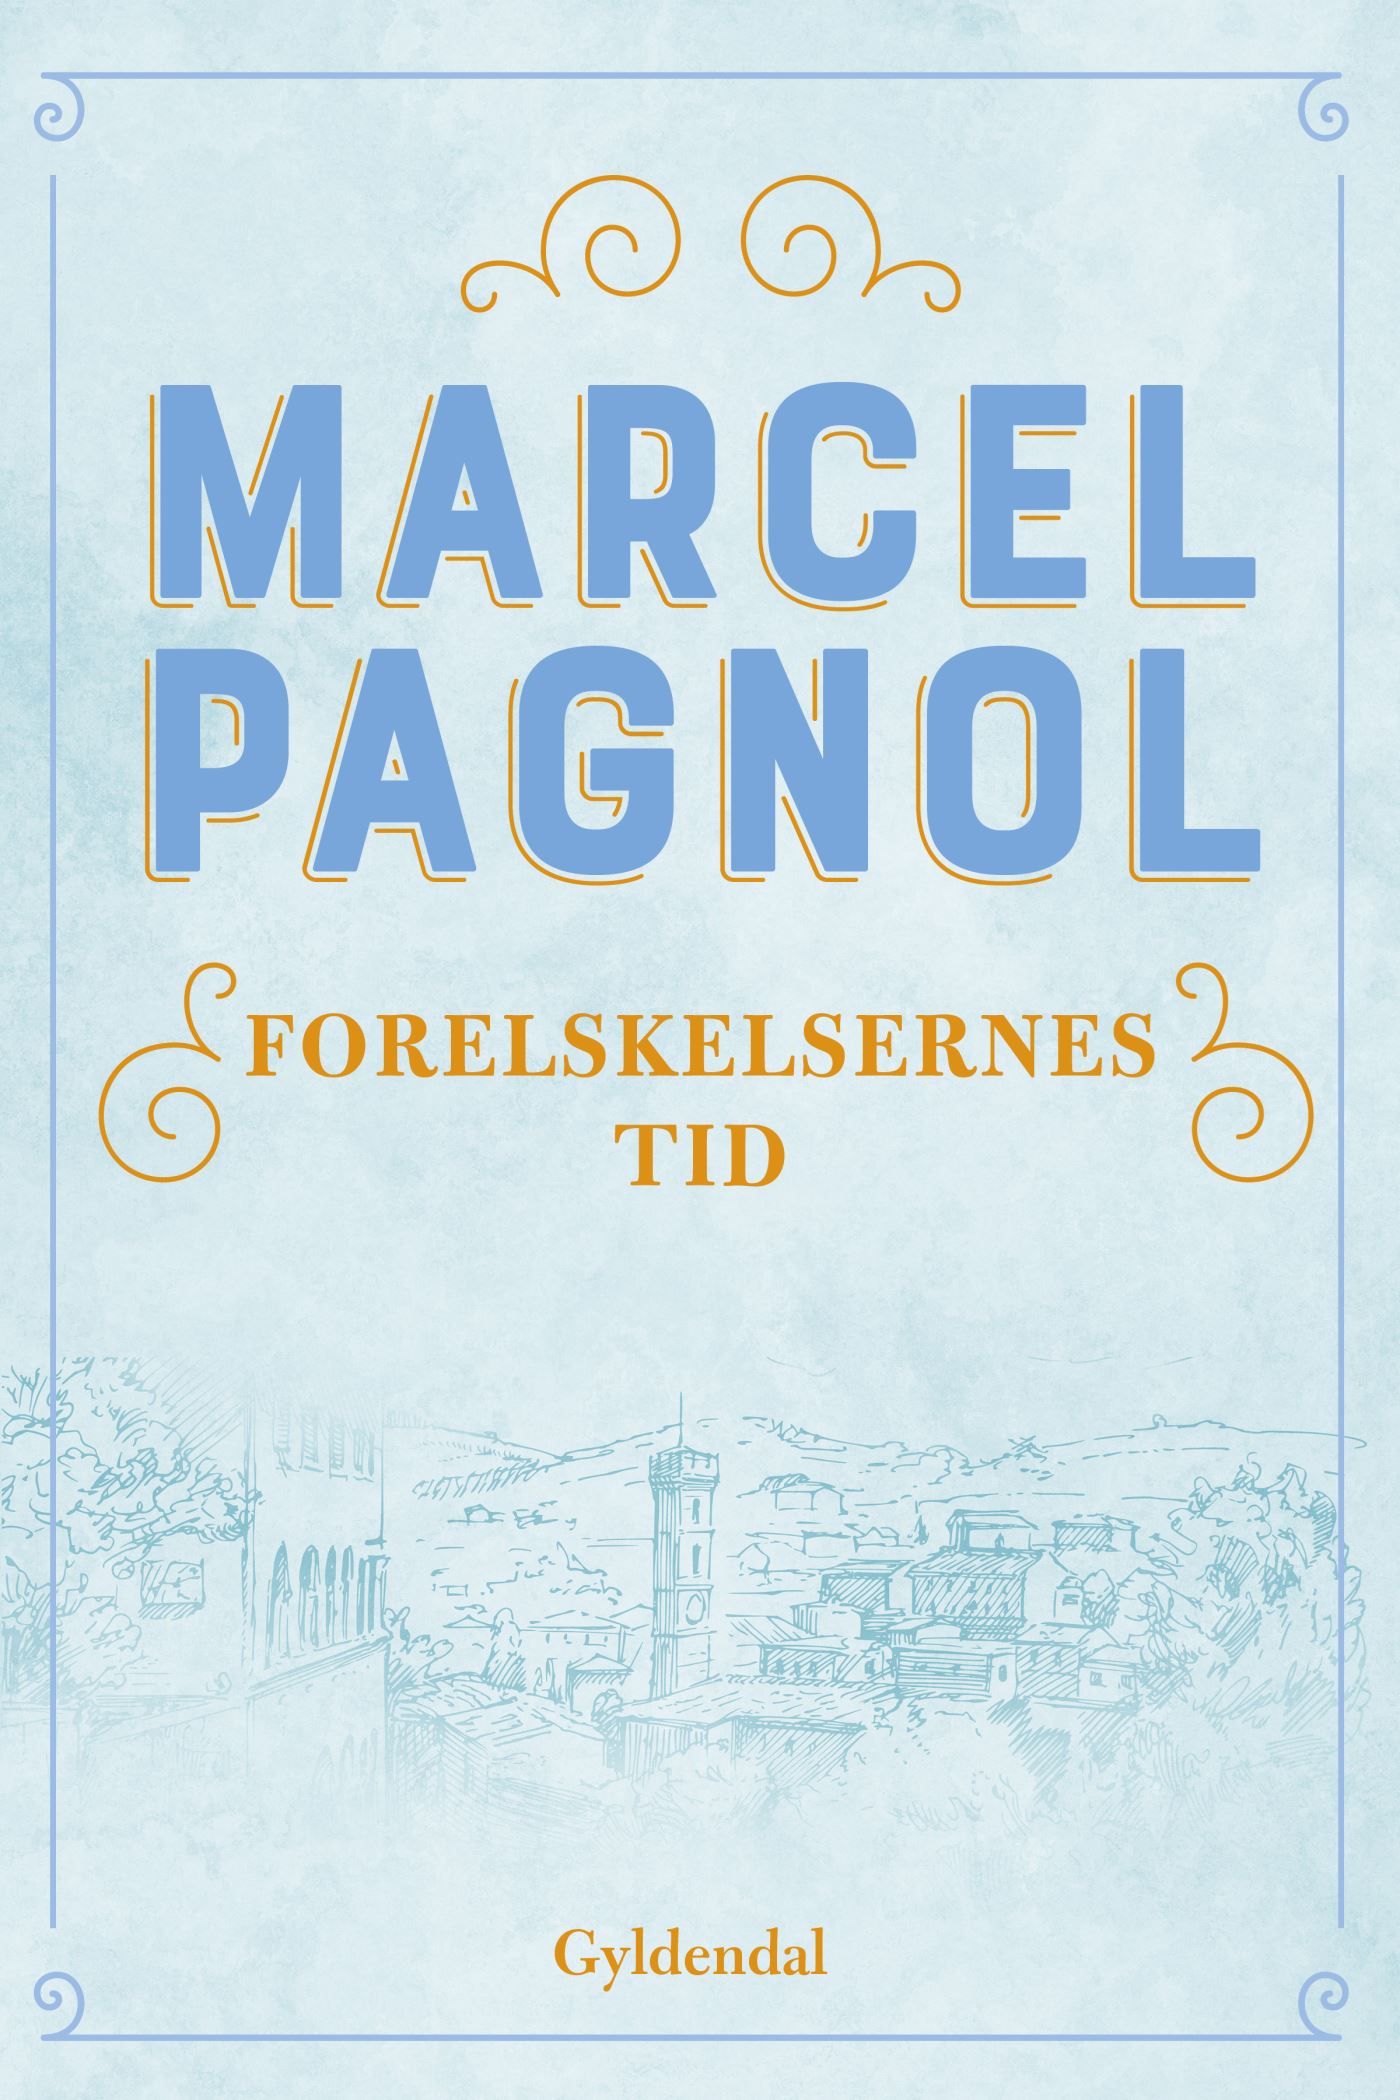 Forelskelsernes tid, eBook by Marcel Pagnol